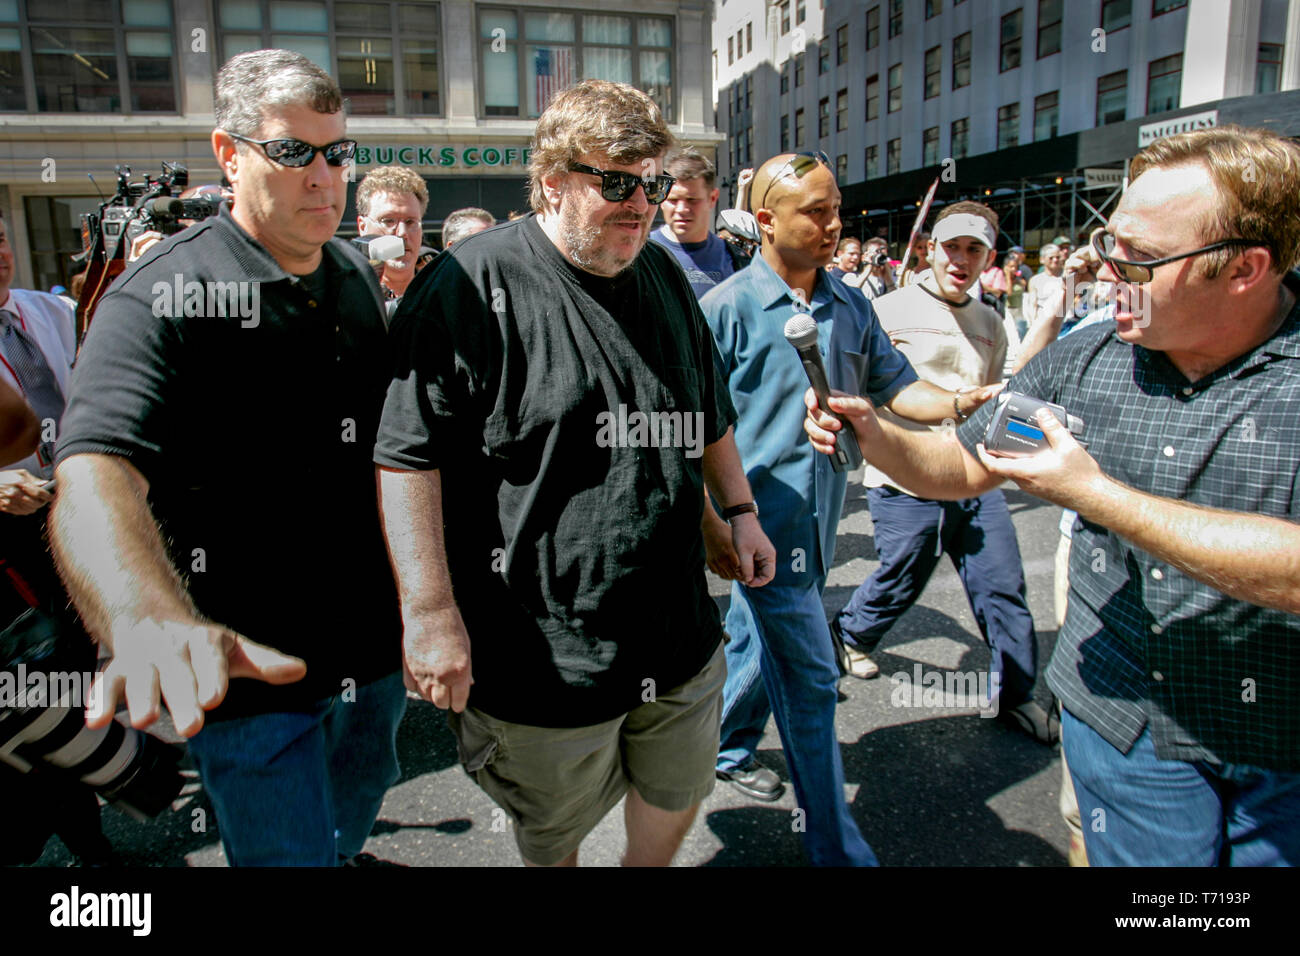 Réalisatrice de documentaires et auteur Michael Moore est escorté par des gardes du corps alors qu'il participait à une marche de protestation au cours de la Convention nationale du parti républicain à New York. À la gauche de Moore, choc jock et théoricien de la conspiration Alex Jones tente d'interviewer Moore. Banque D'Images